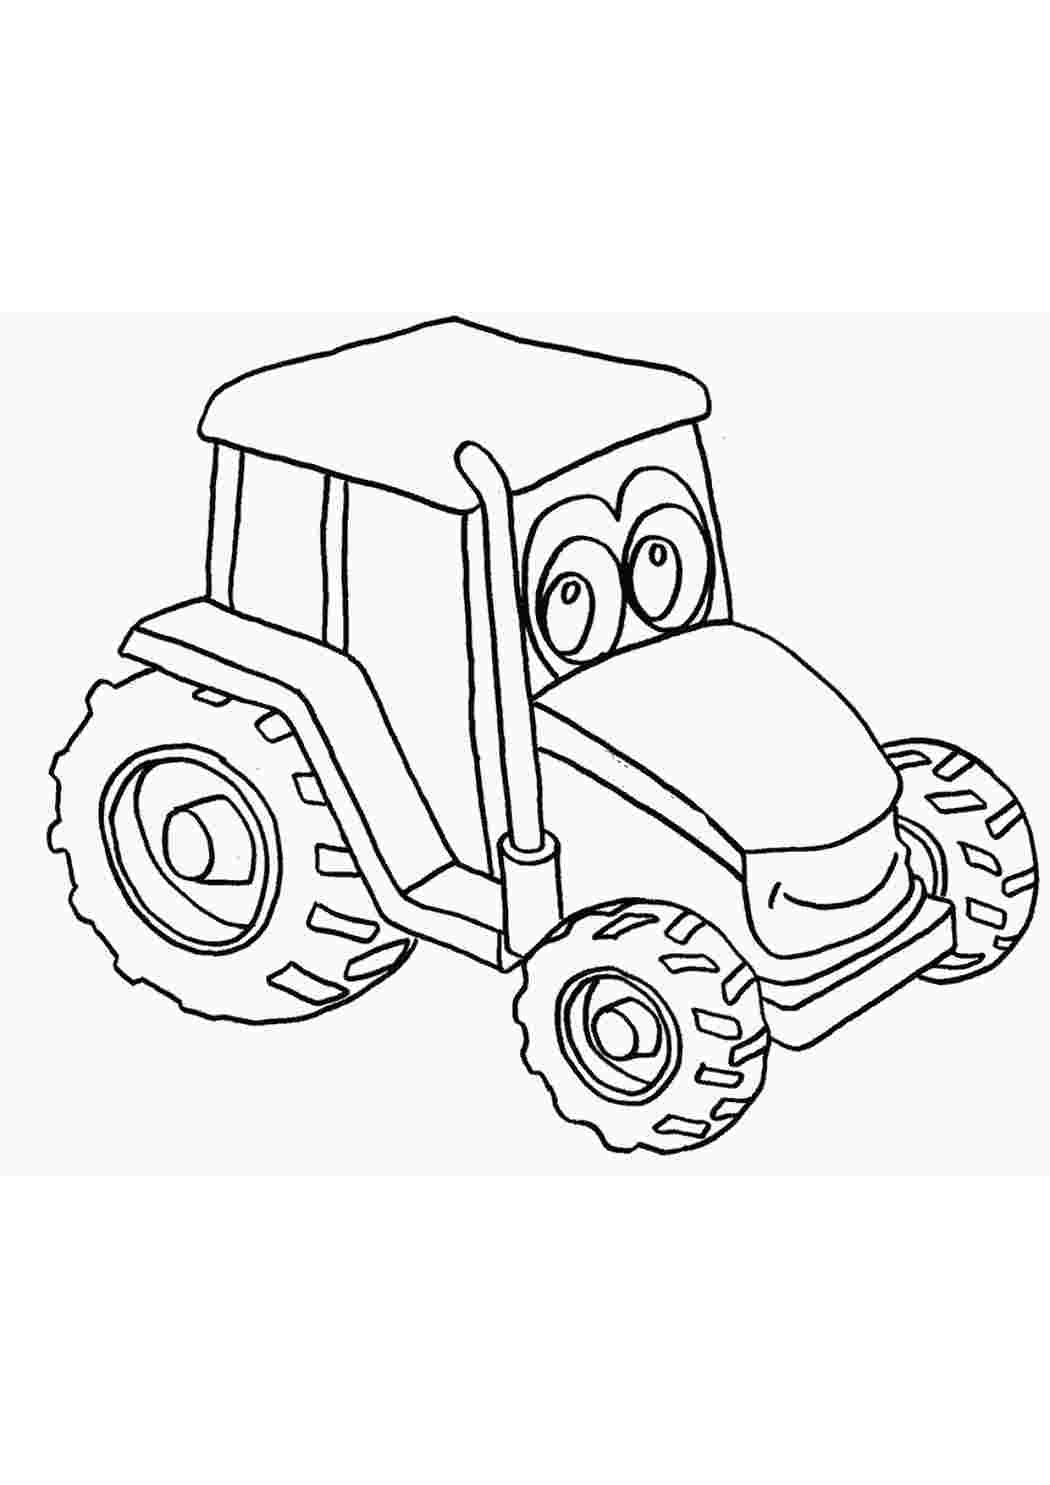 Трактор раскраска для детей 7 лет. Раскраска трактор. Раскраски для мальчиков трактор. Трактор для раскрашивания детям. Раскраски для мальчиков трактор 3 года.